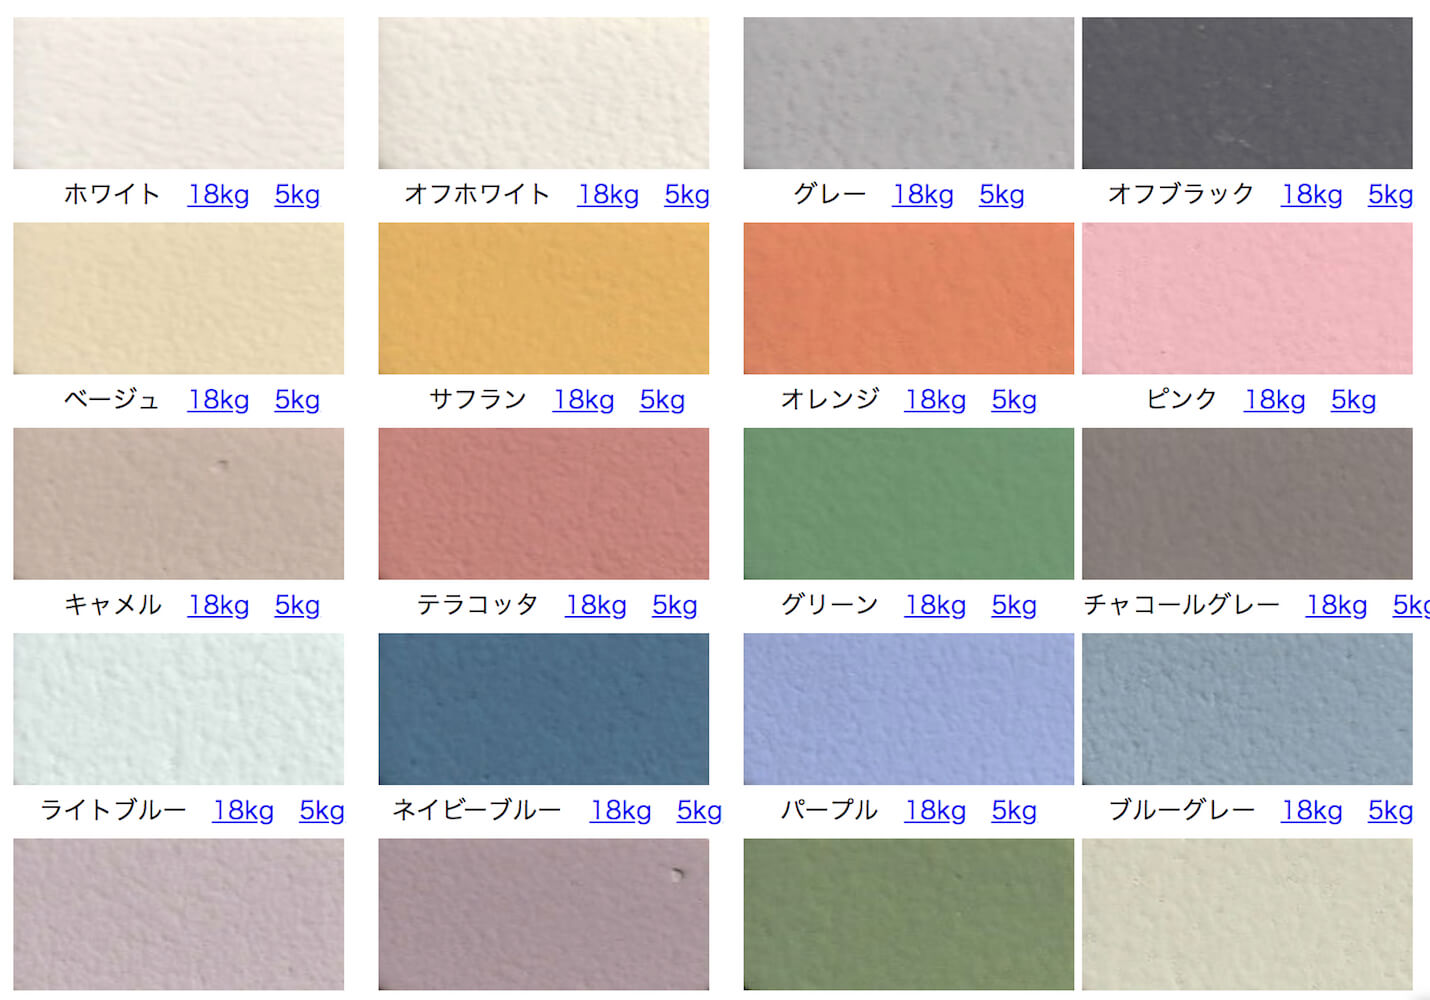 色付きカラー漆喰・珪藻土の商品リストまとめ | 99% DIY -DIYブログ-